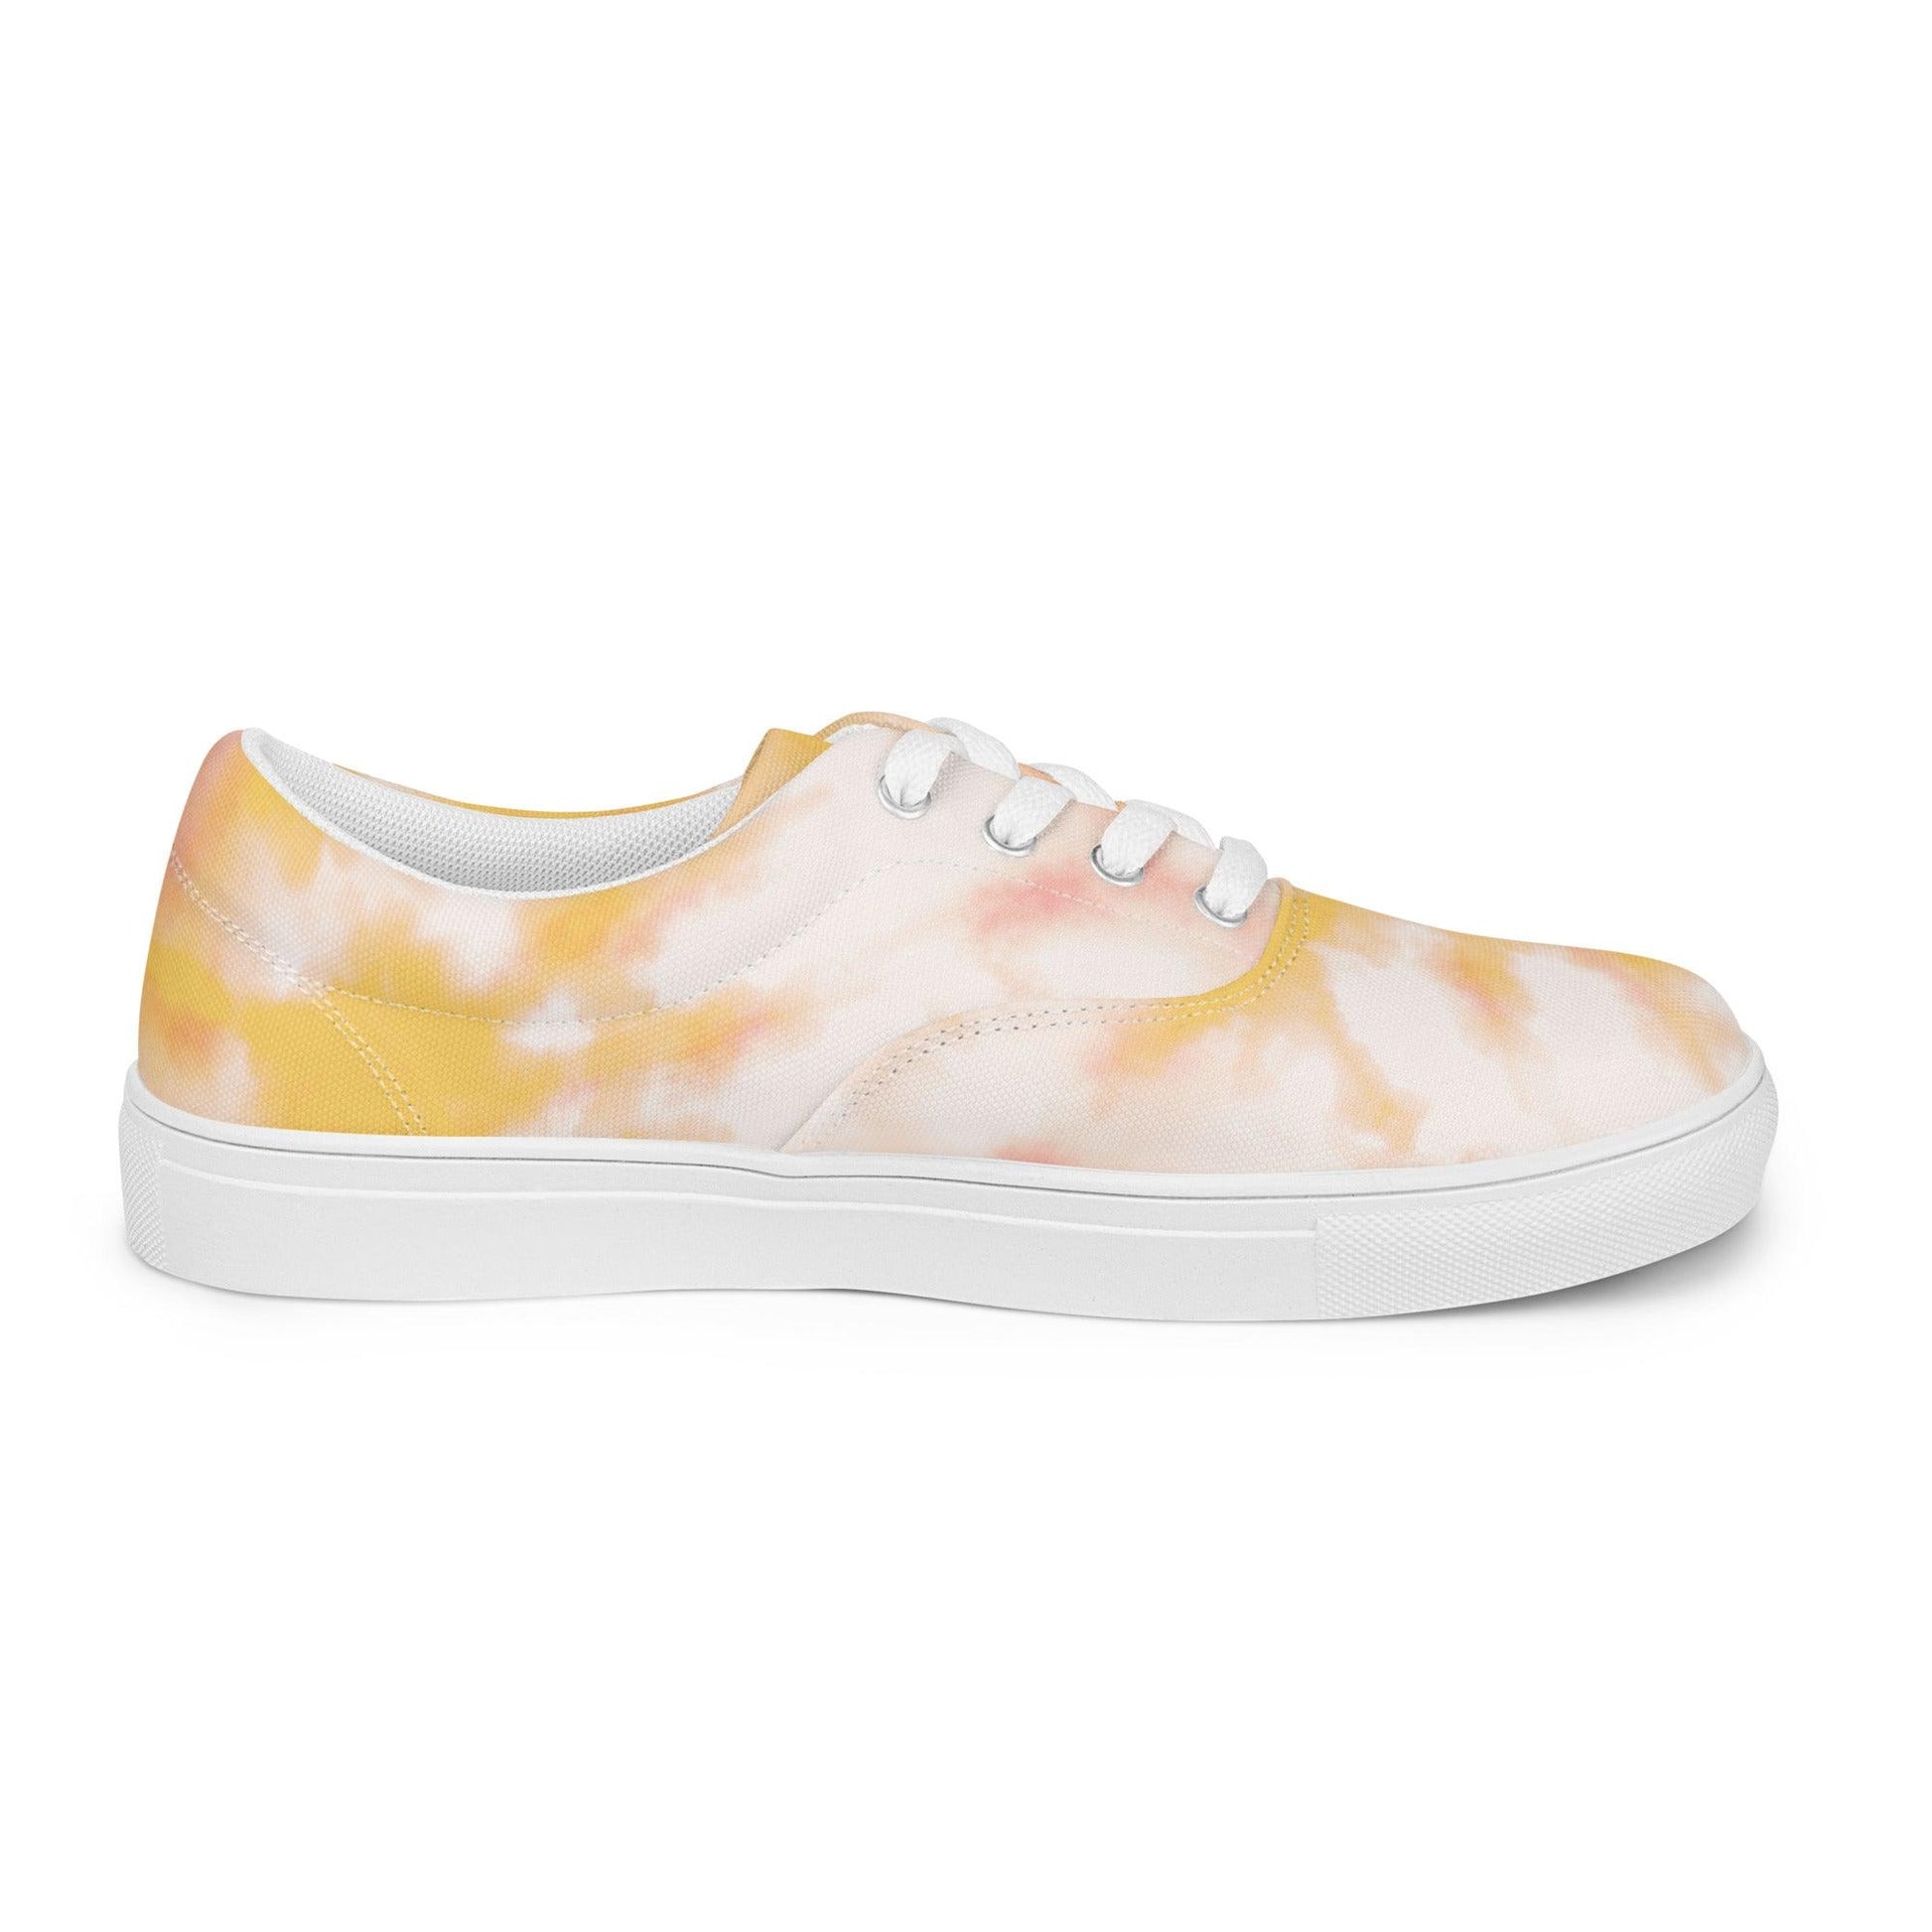 Peach Tie Dye Women’s Lace-up Canvas Shoes - L & M Kee, LLC